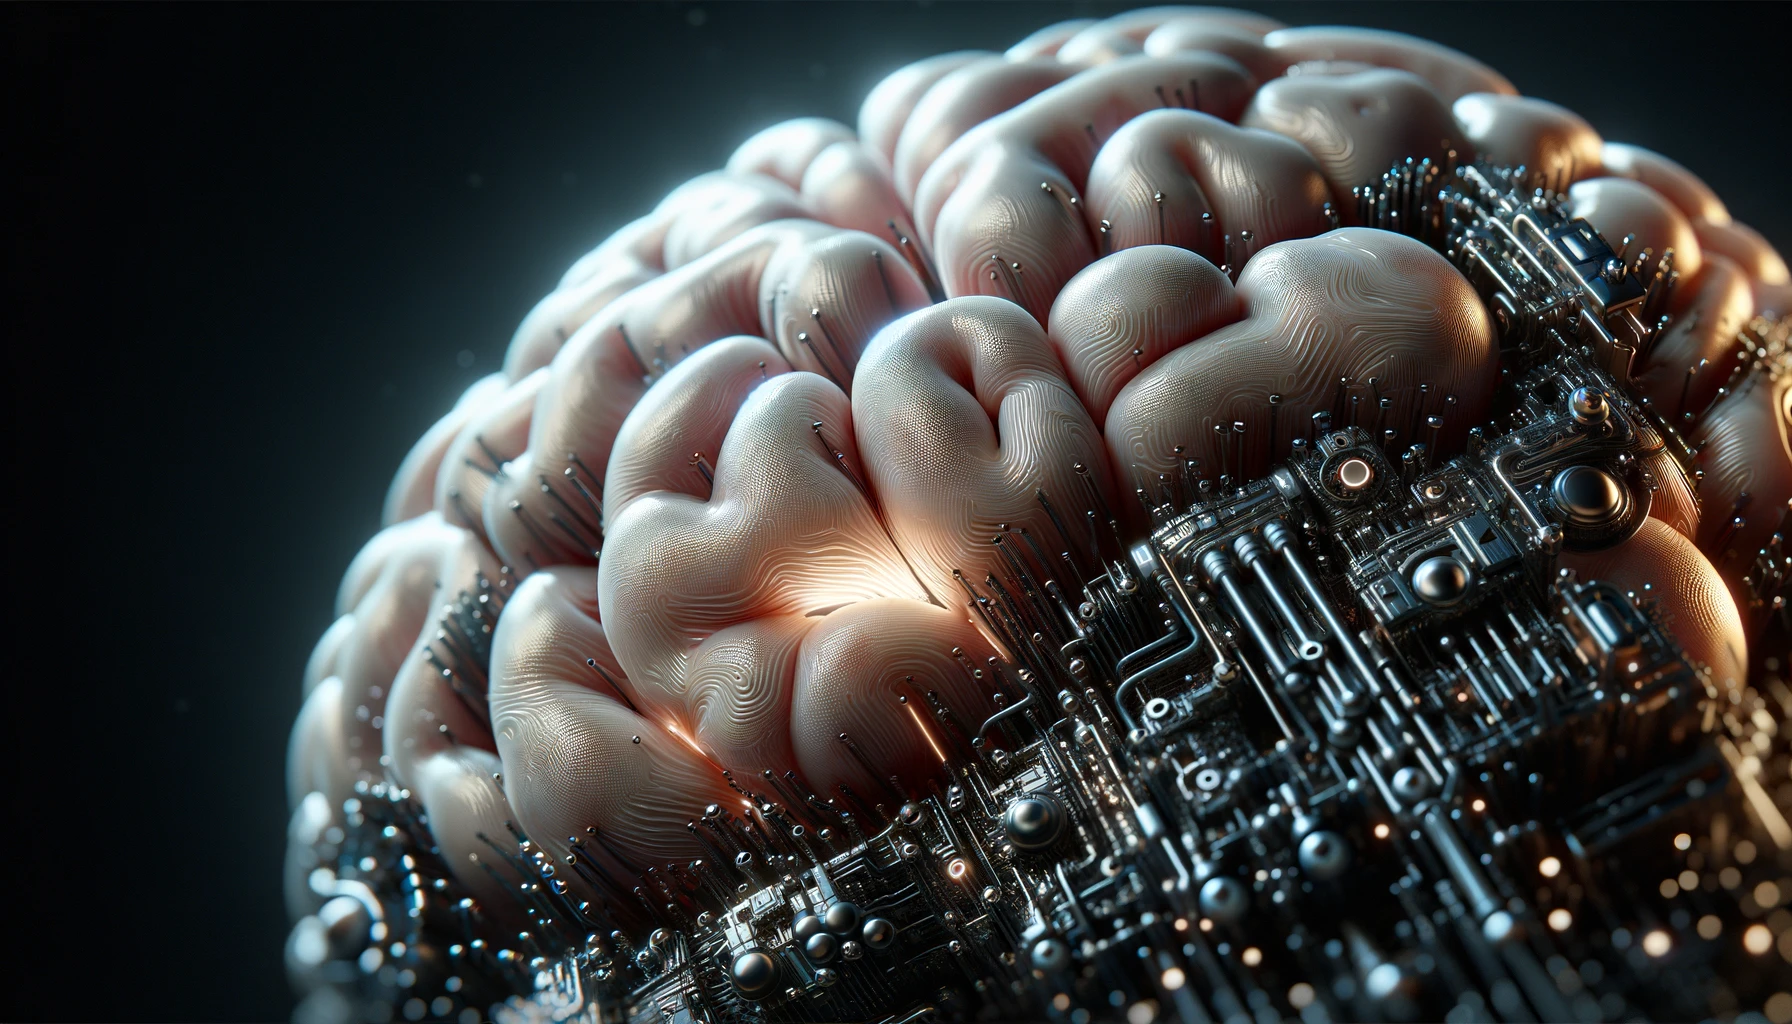 Мозговой чип Neuralink оказался опасен, но Илон Маск умолчал об этом